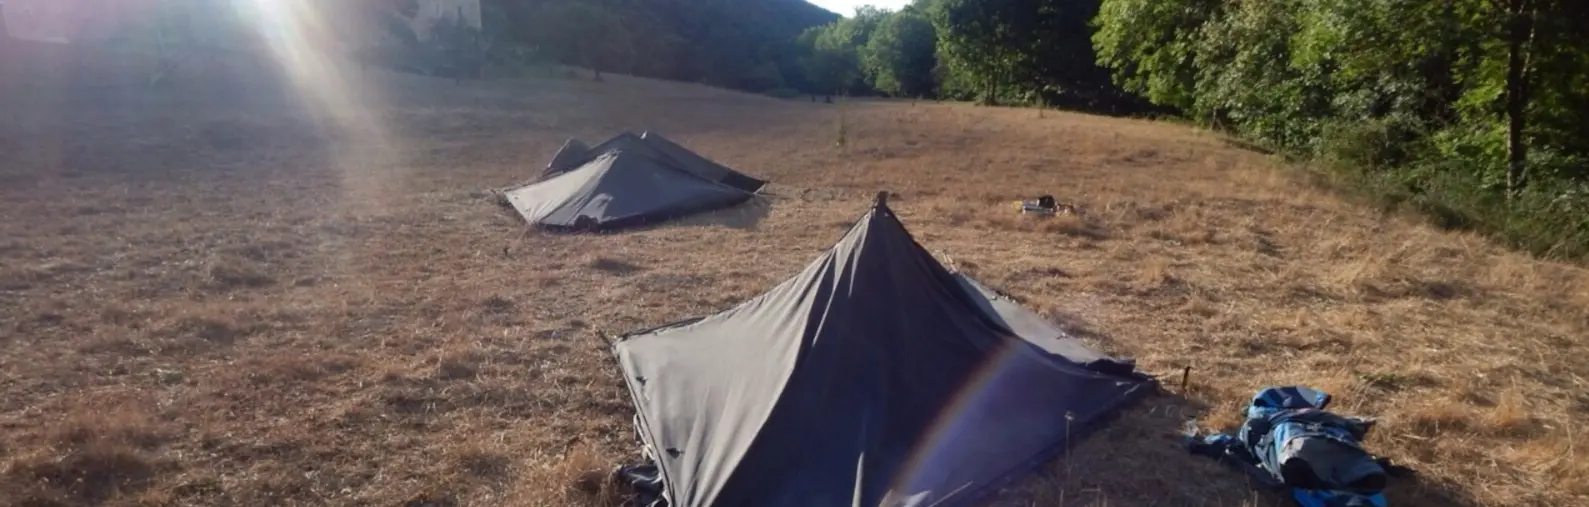 Zelte auf Wiese